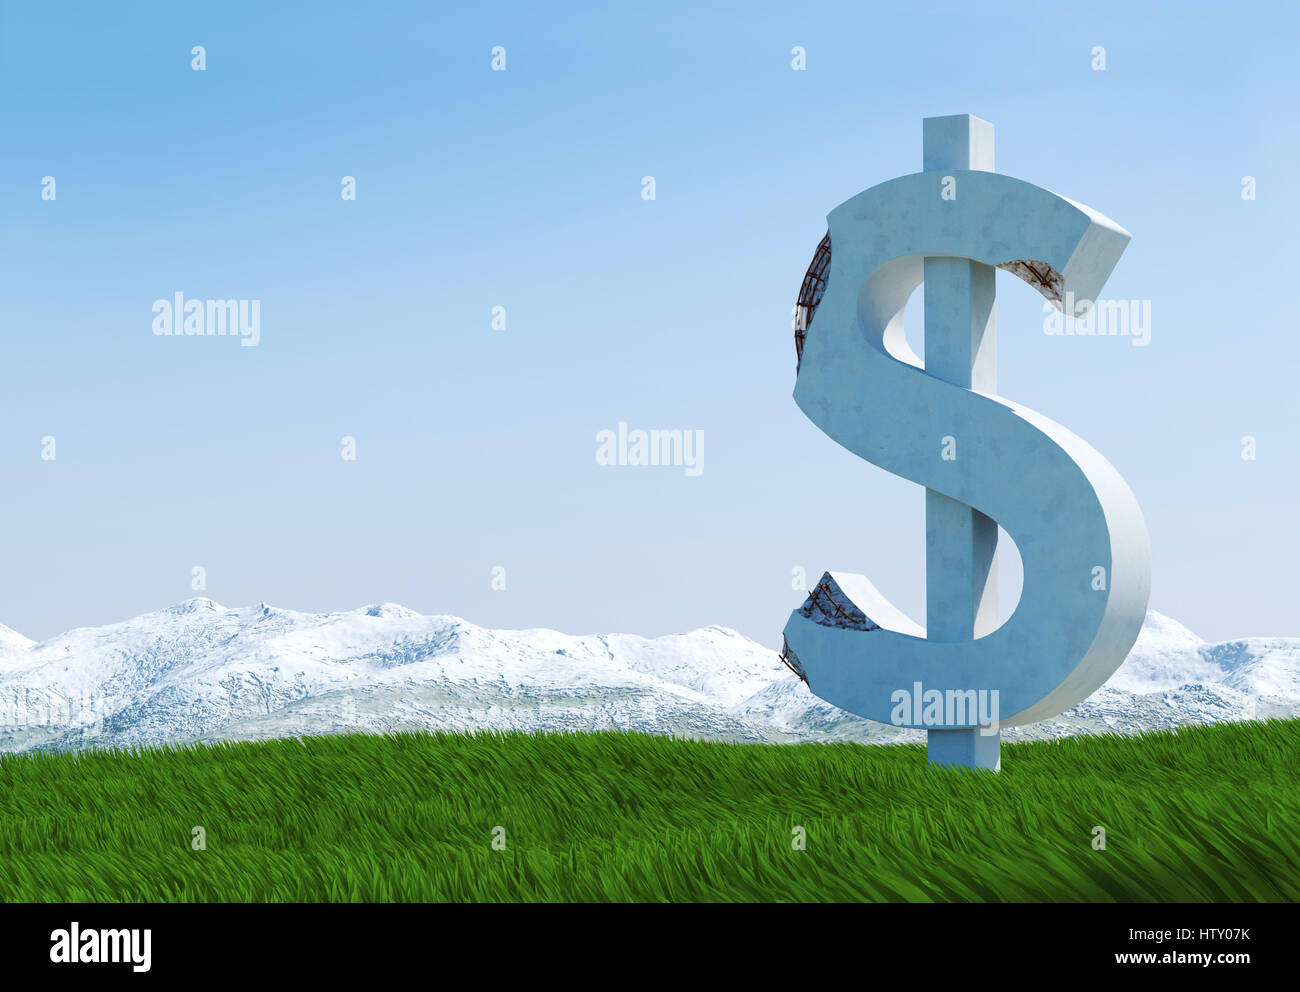 Calcestruzzo danneggiato dollar sign statua isolata sul prato di erba con la montagna innevata e cielo blu come sfondo Foto Stock